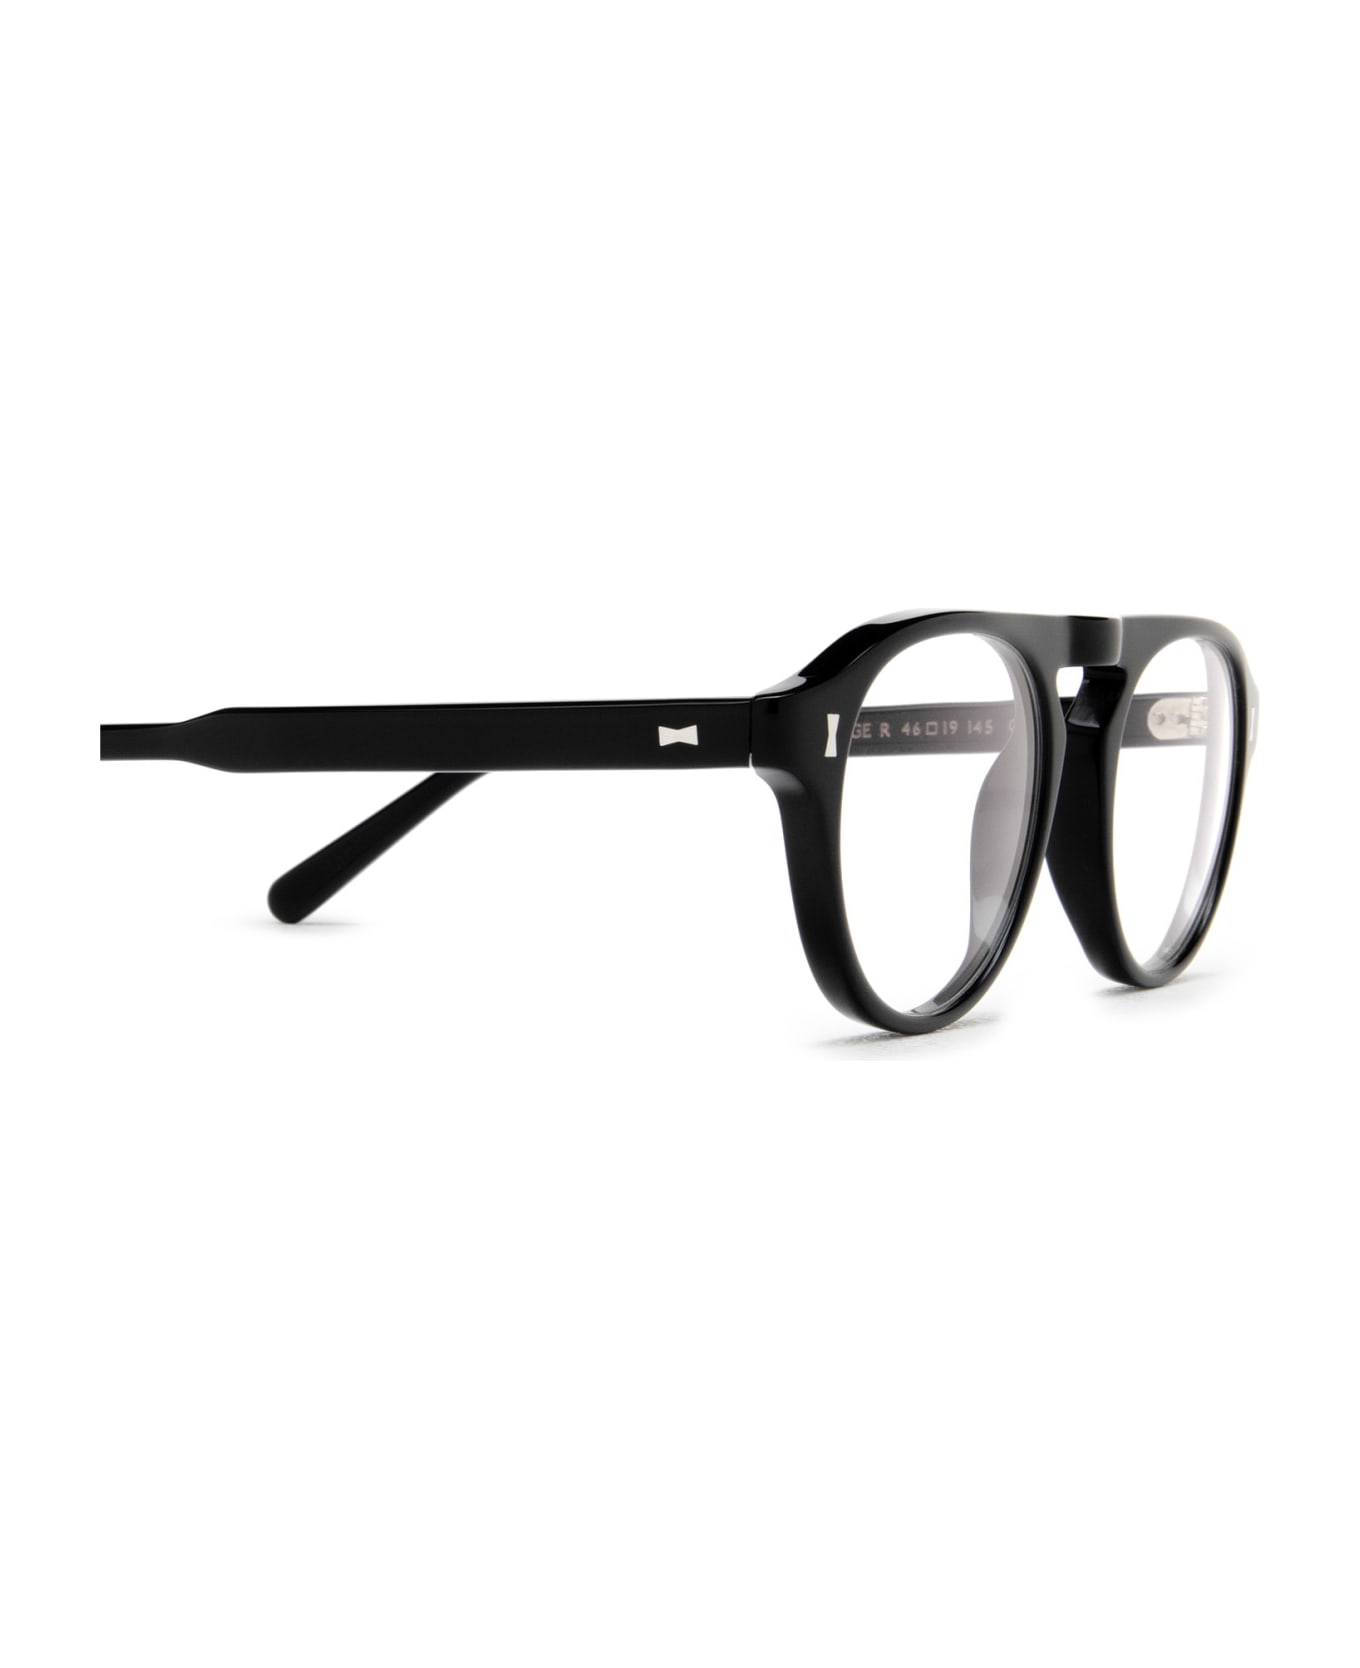 Cubitts Tonbridge Black Glasses - Black